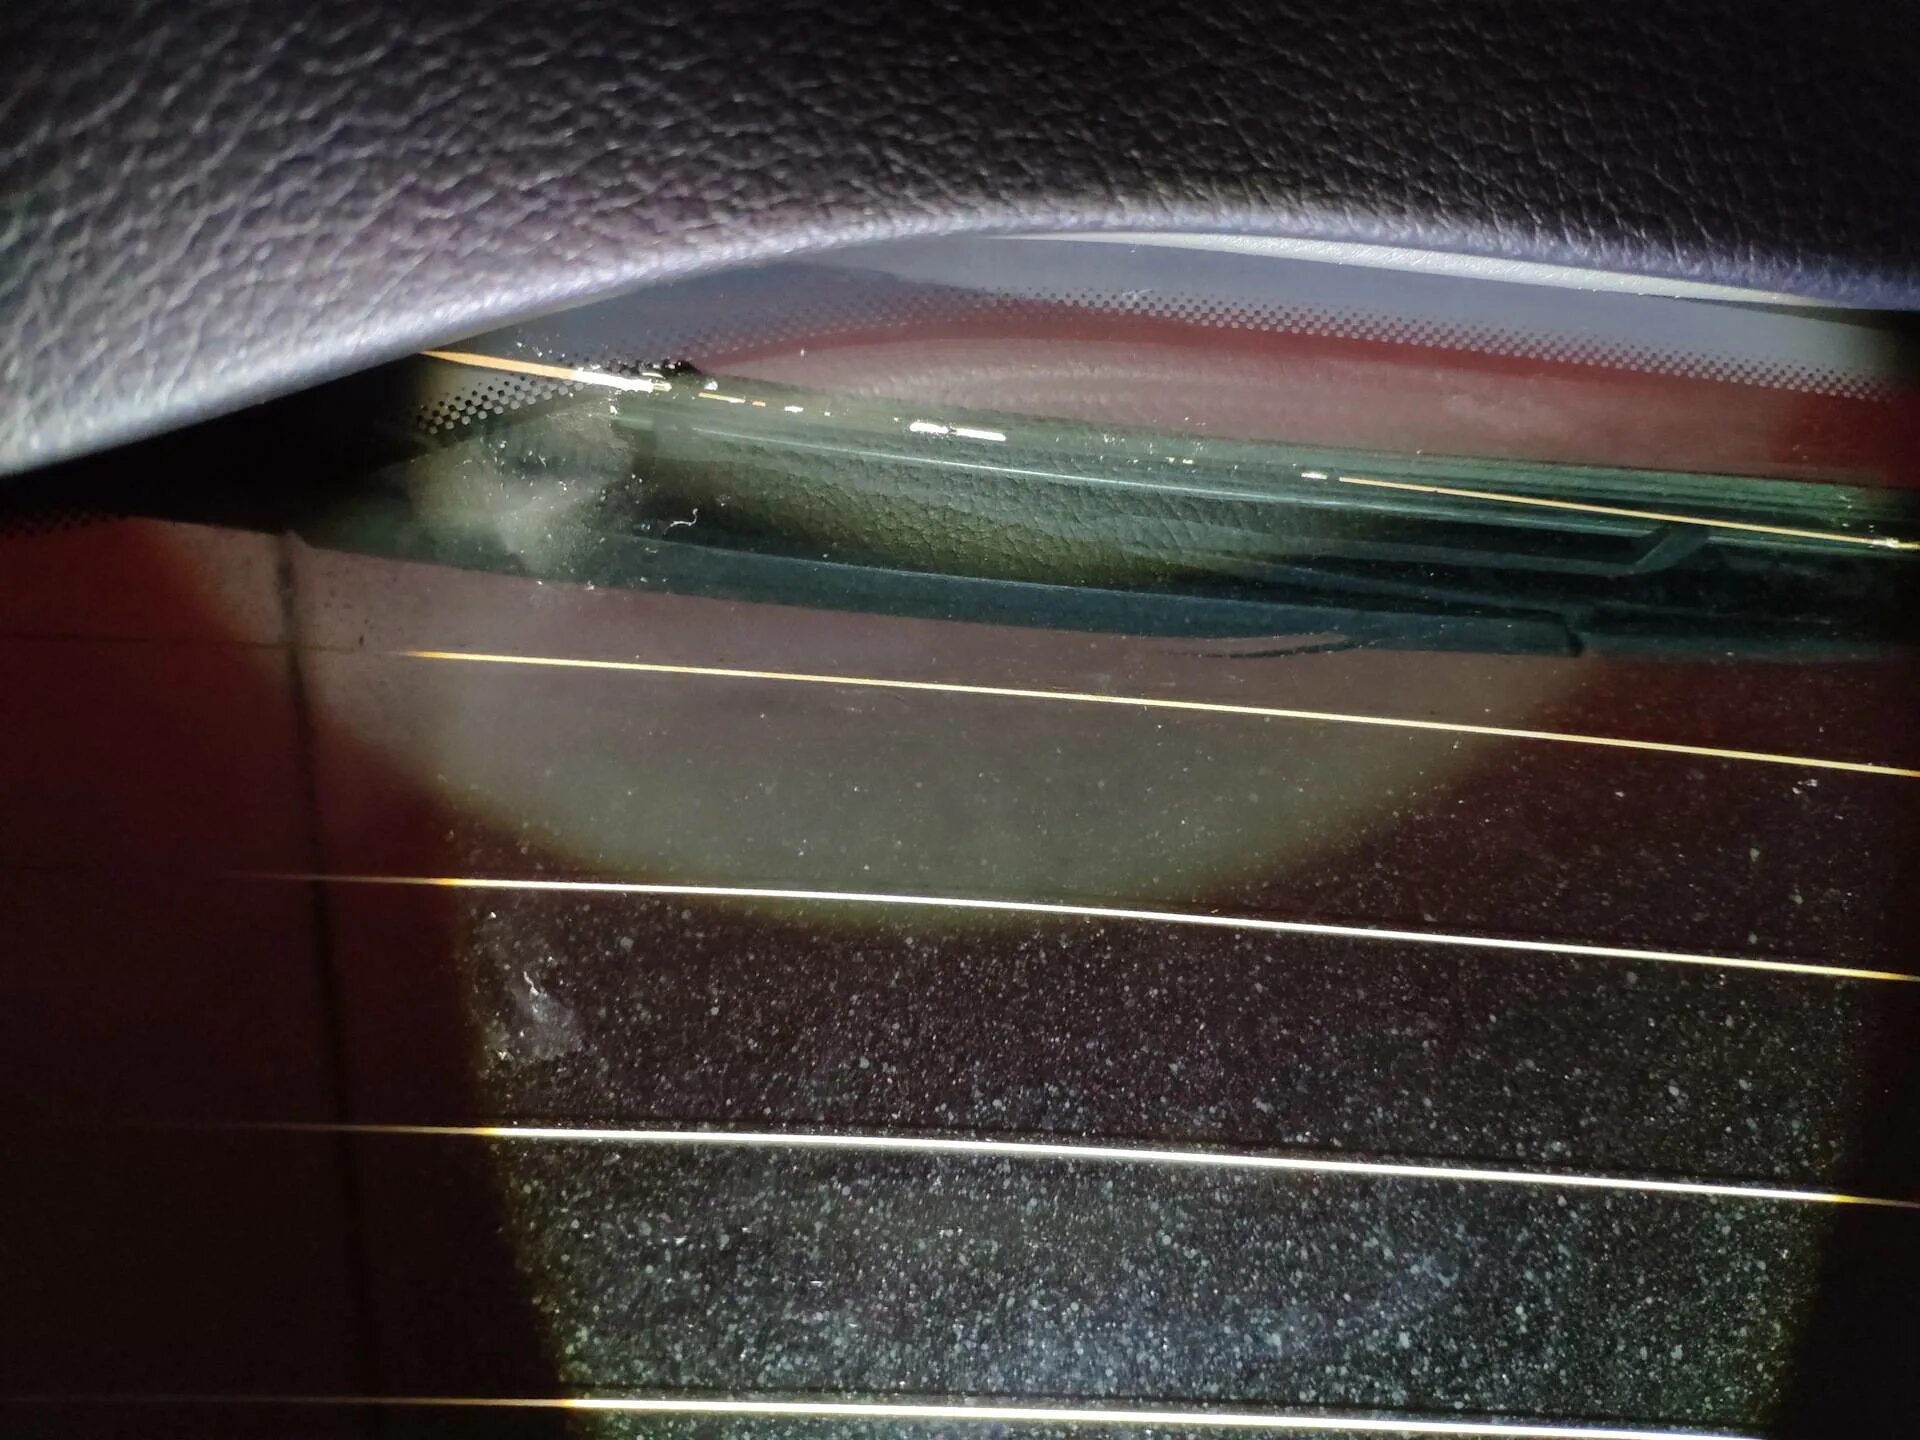 Сетка обогрева заднего стекла ВАЗ 2109. F30 обогрева заднего стекла. Sx4 кз заднего обогревателя стекла. Geely SL H,обогрев заднего стекла. Восстановление обогрева стекла